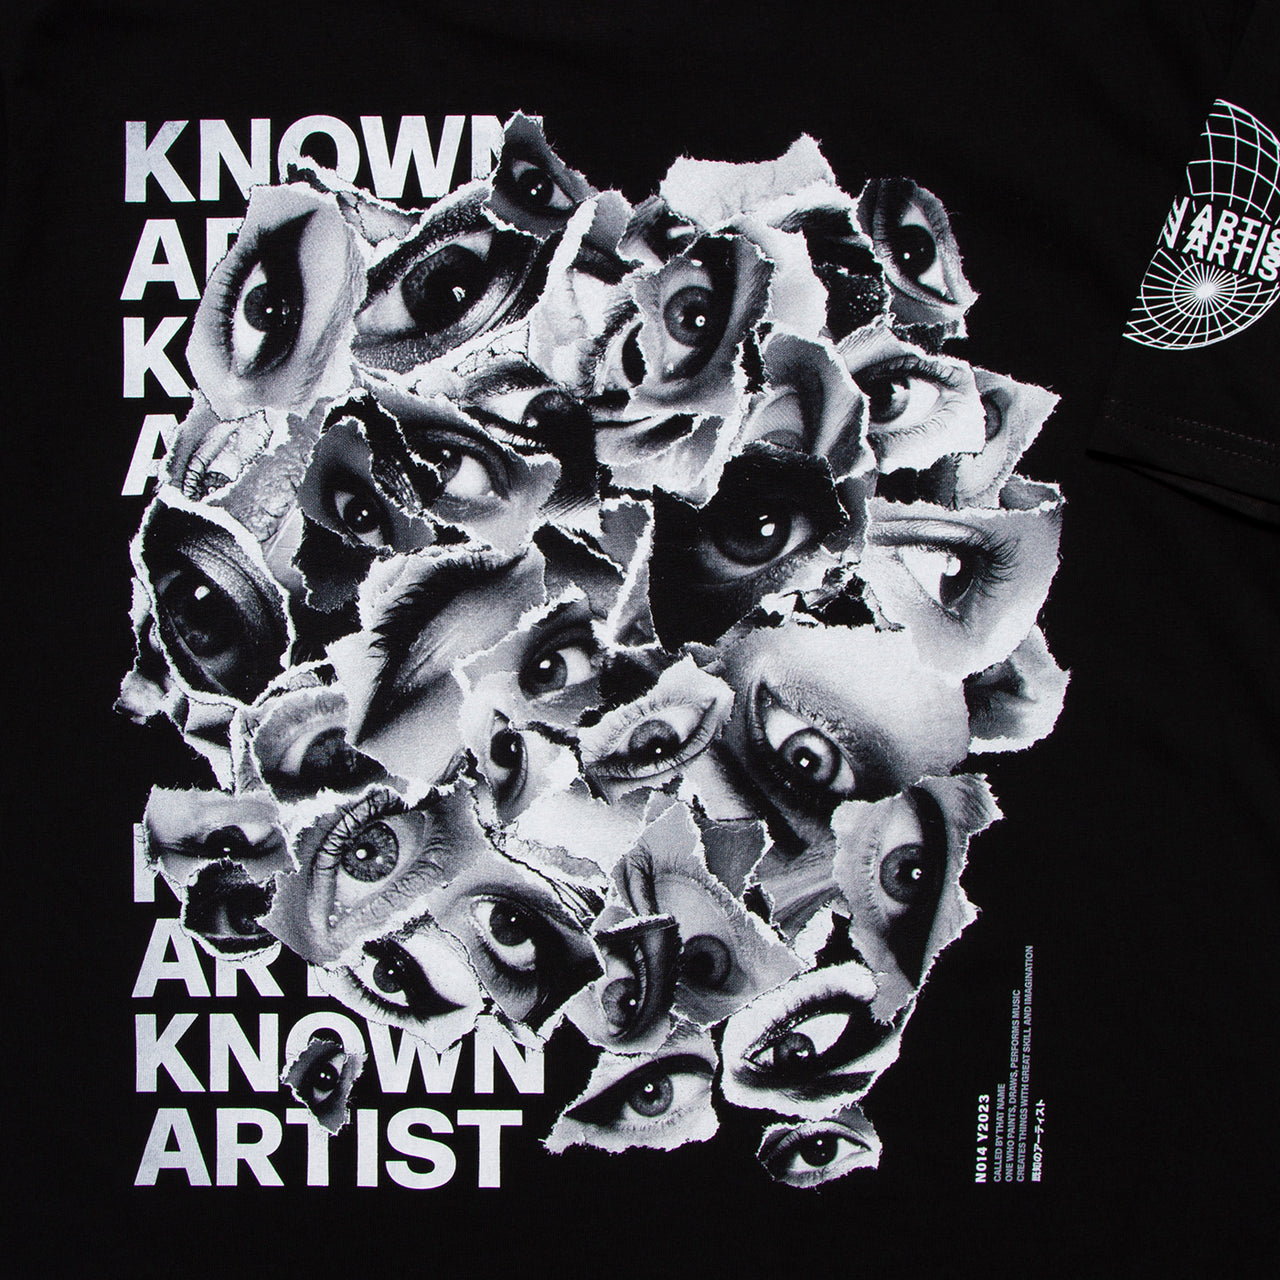 Known Artist 014 - Tshirt - Black